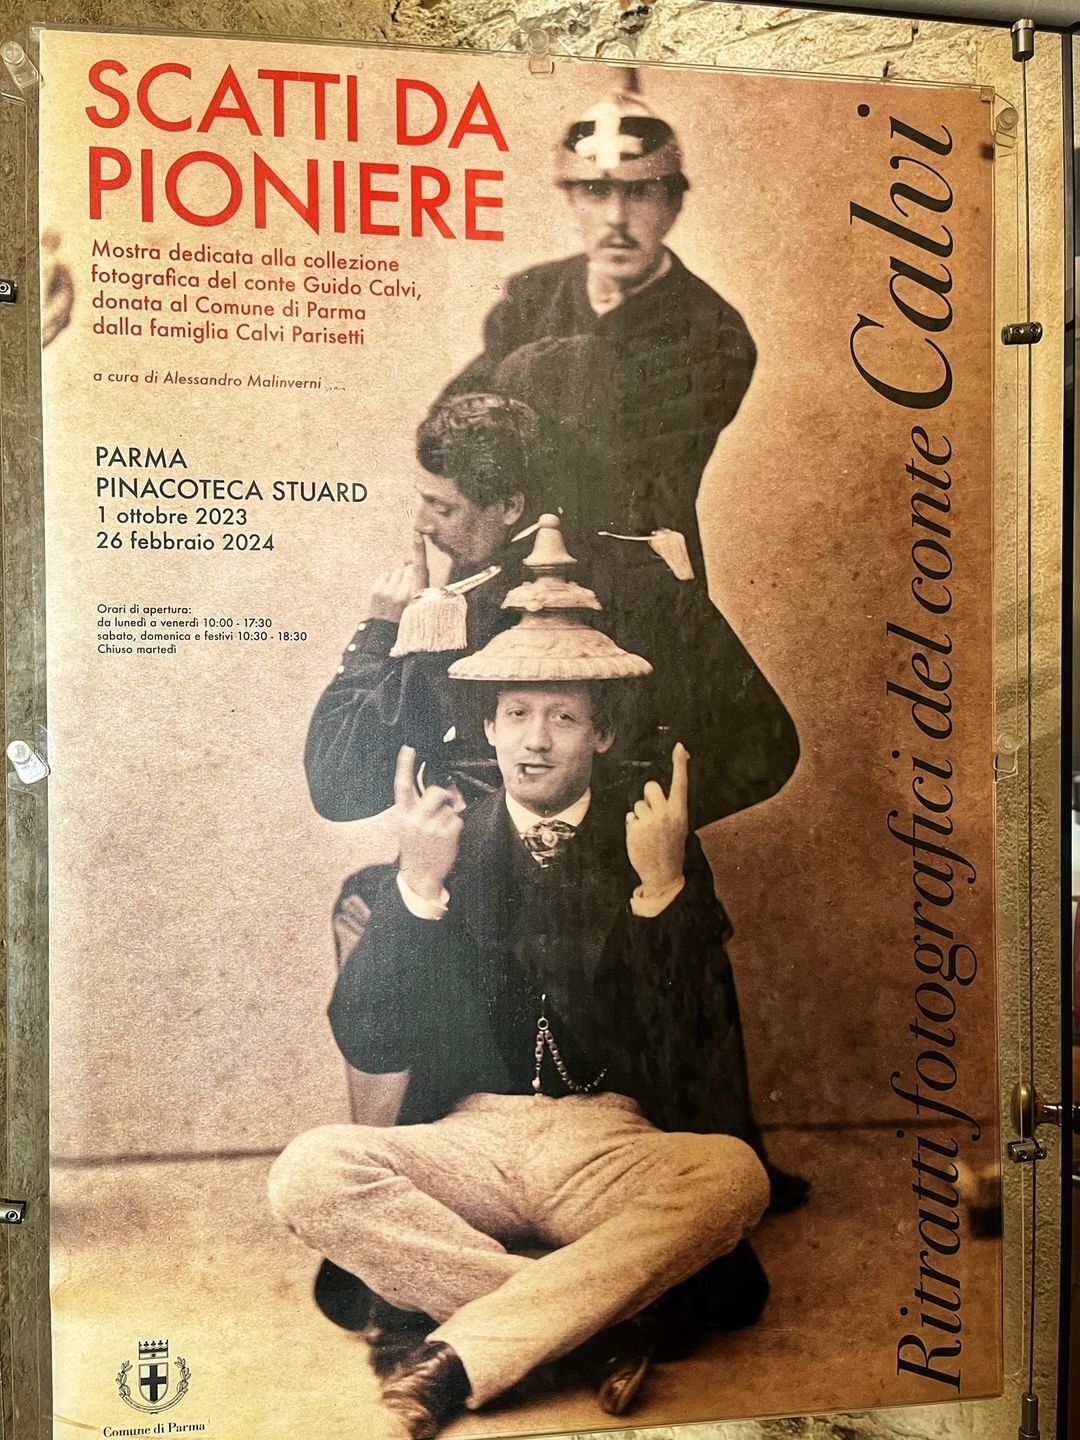 Alla Pinacoteca Stuard la mostra: “Scatti da pioniere. Ritratti fotografici del conte Calvi”.